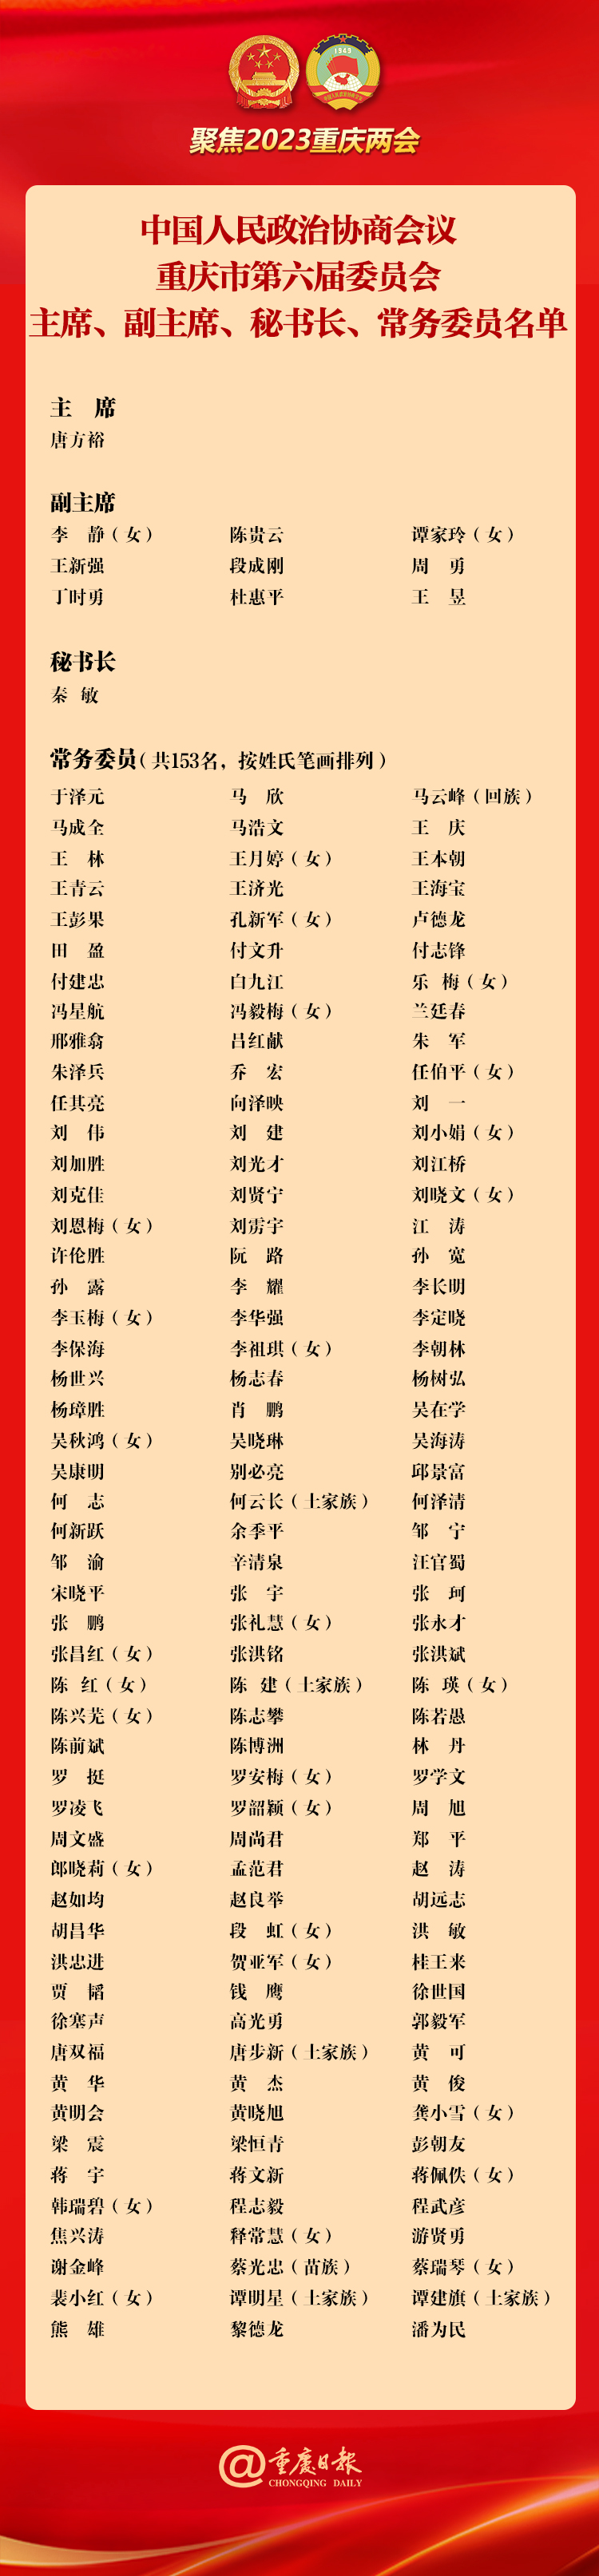 一图快览|政协重庆市第六届委员会主席、副主席、秘书长、常务委员名单